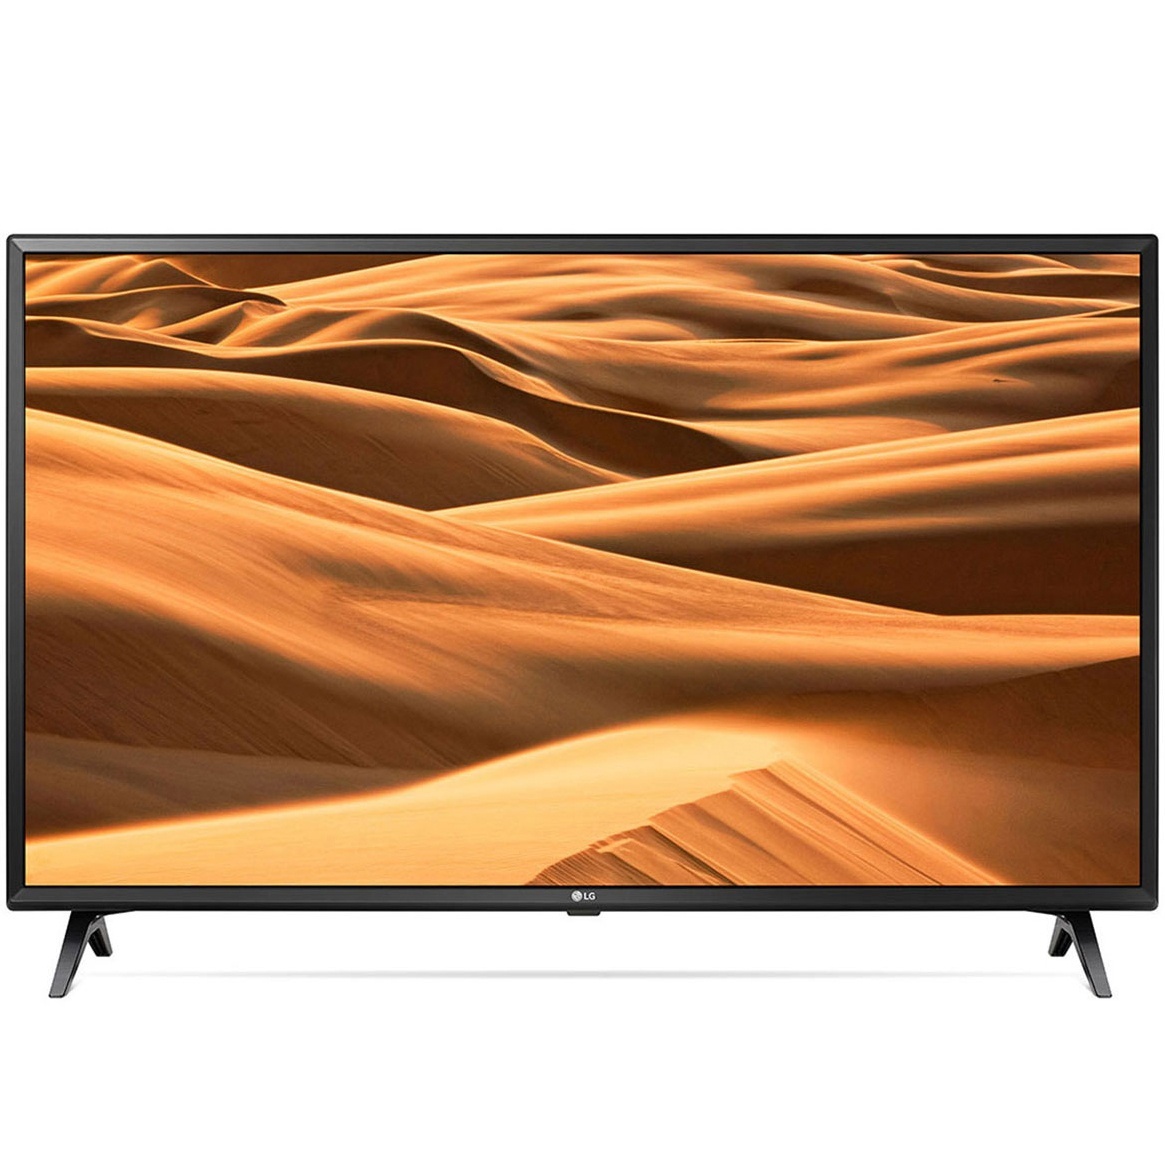 LG UHD TV 49 inch 4K Smart UHD TV HDR 49UM7300PTA chính hãng